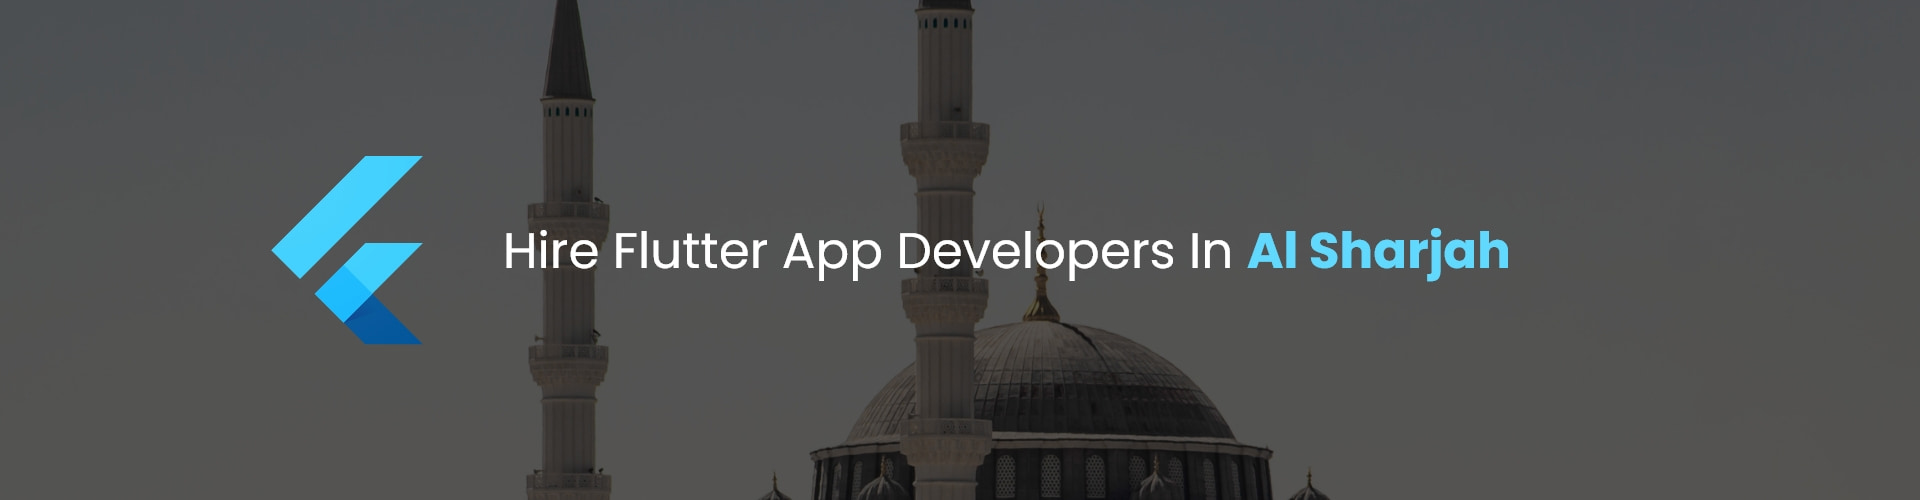 hire flutter app developers in al sharjah